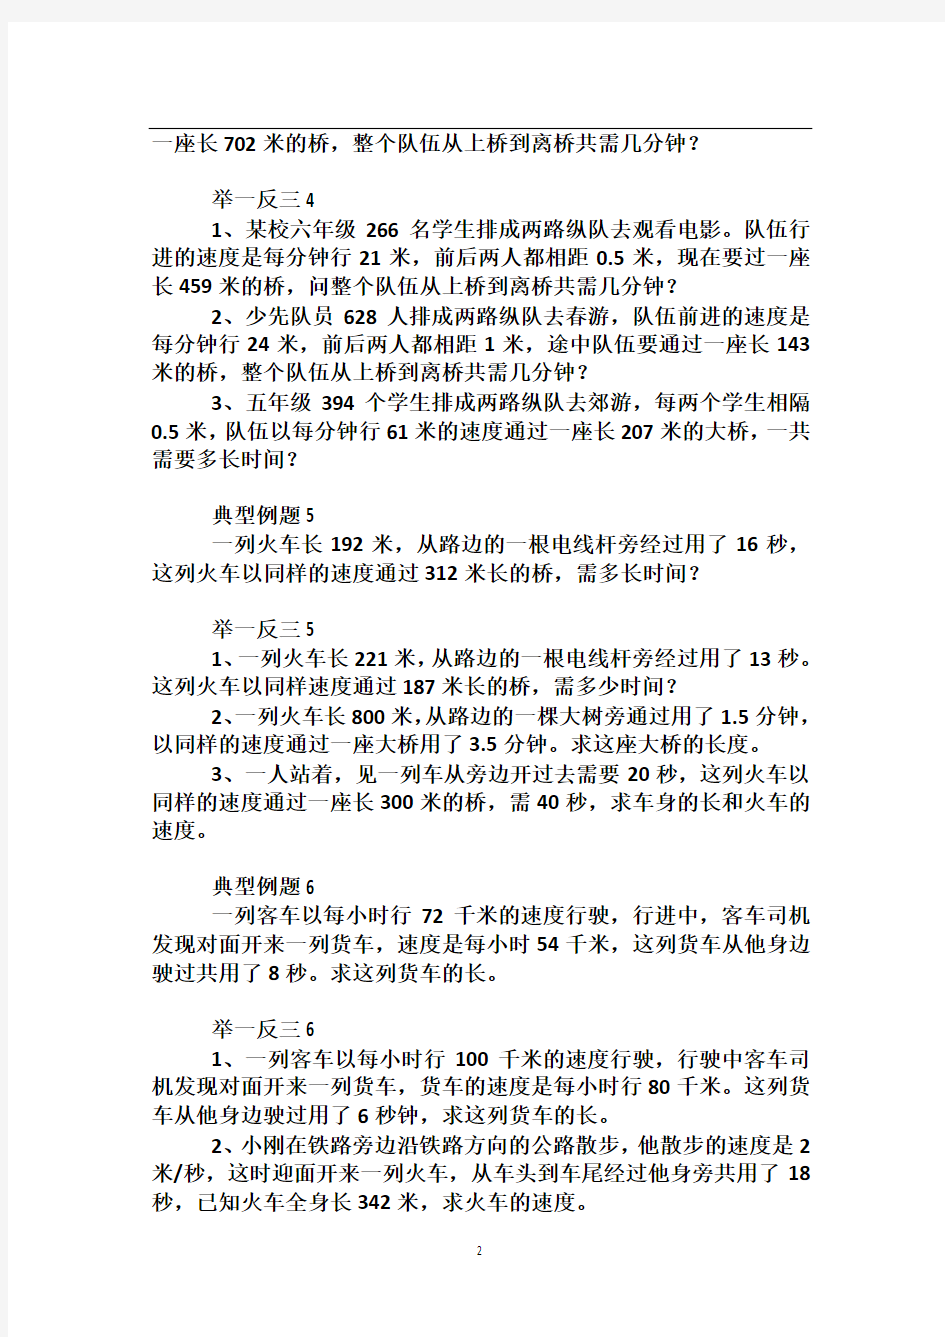 北京华罗庚学校四年级奥数补习教案 第6讲 列车过桥问题1